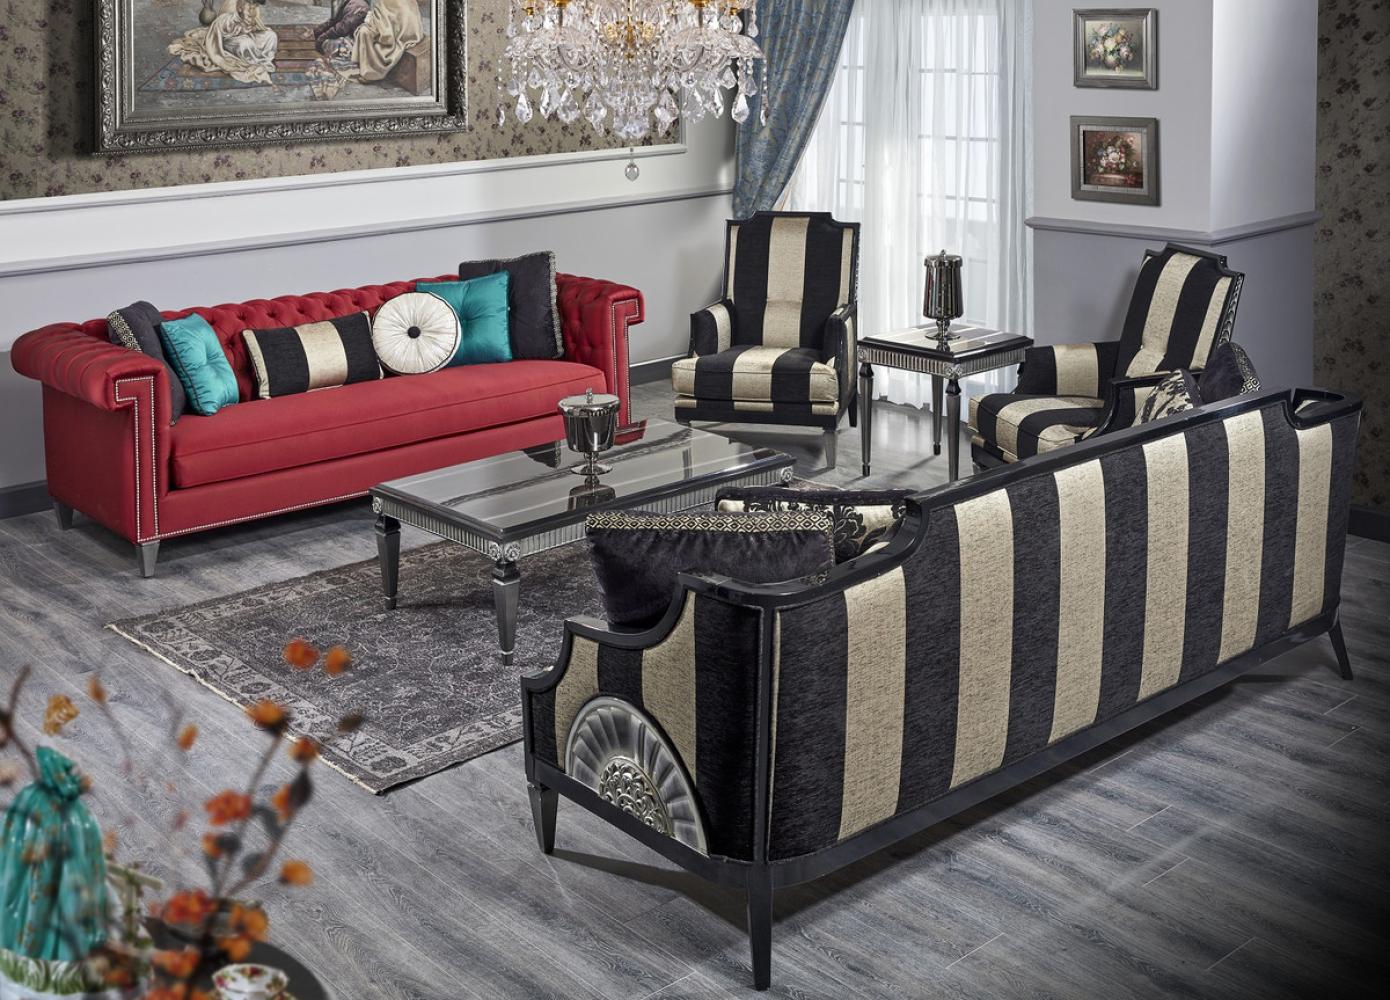 Casa Padrino Luxus Barock Wohnzimmer Set Rot / Schwarz / Gold / Silber - 2 Sofas & 2 Sessel & 1 Couchtisch & 1 Beistelltisch - Barock Wohnzimmermöbel Bild 1